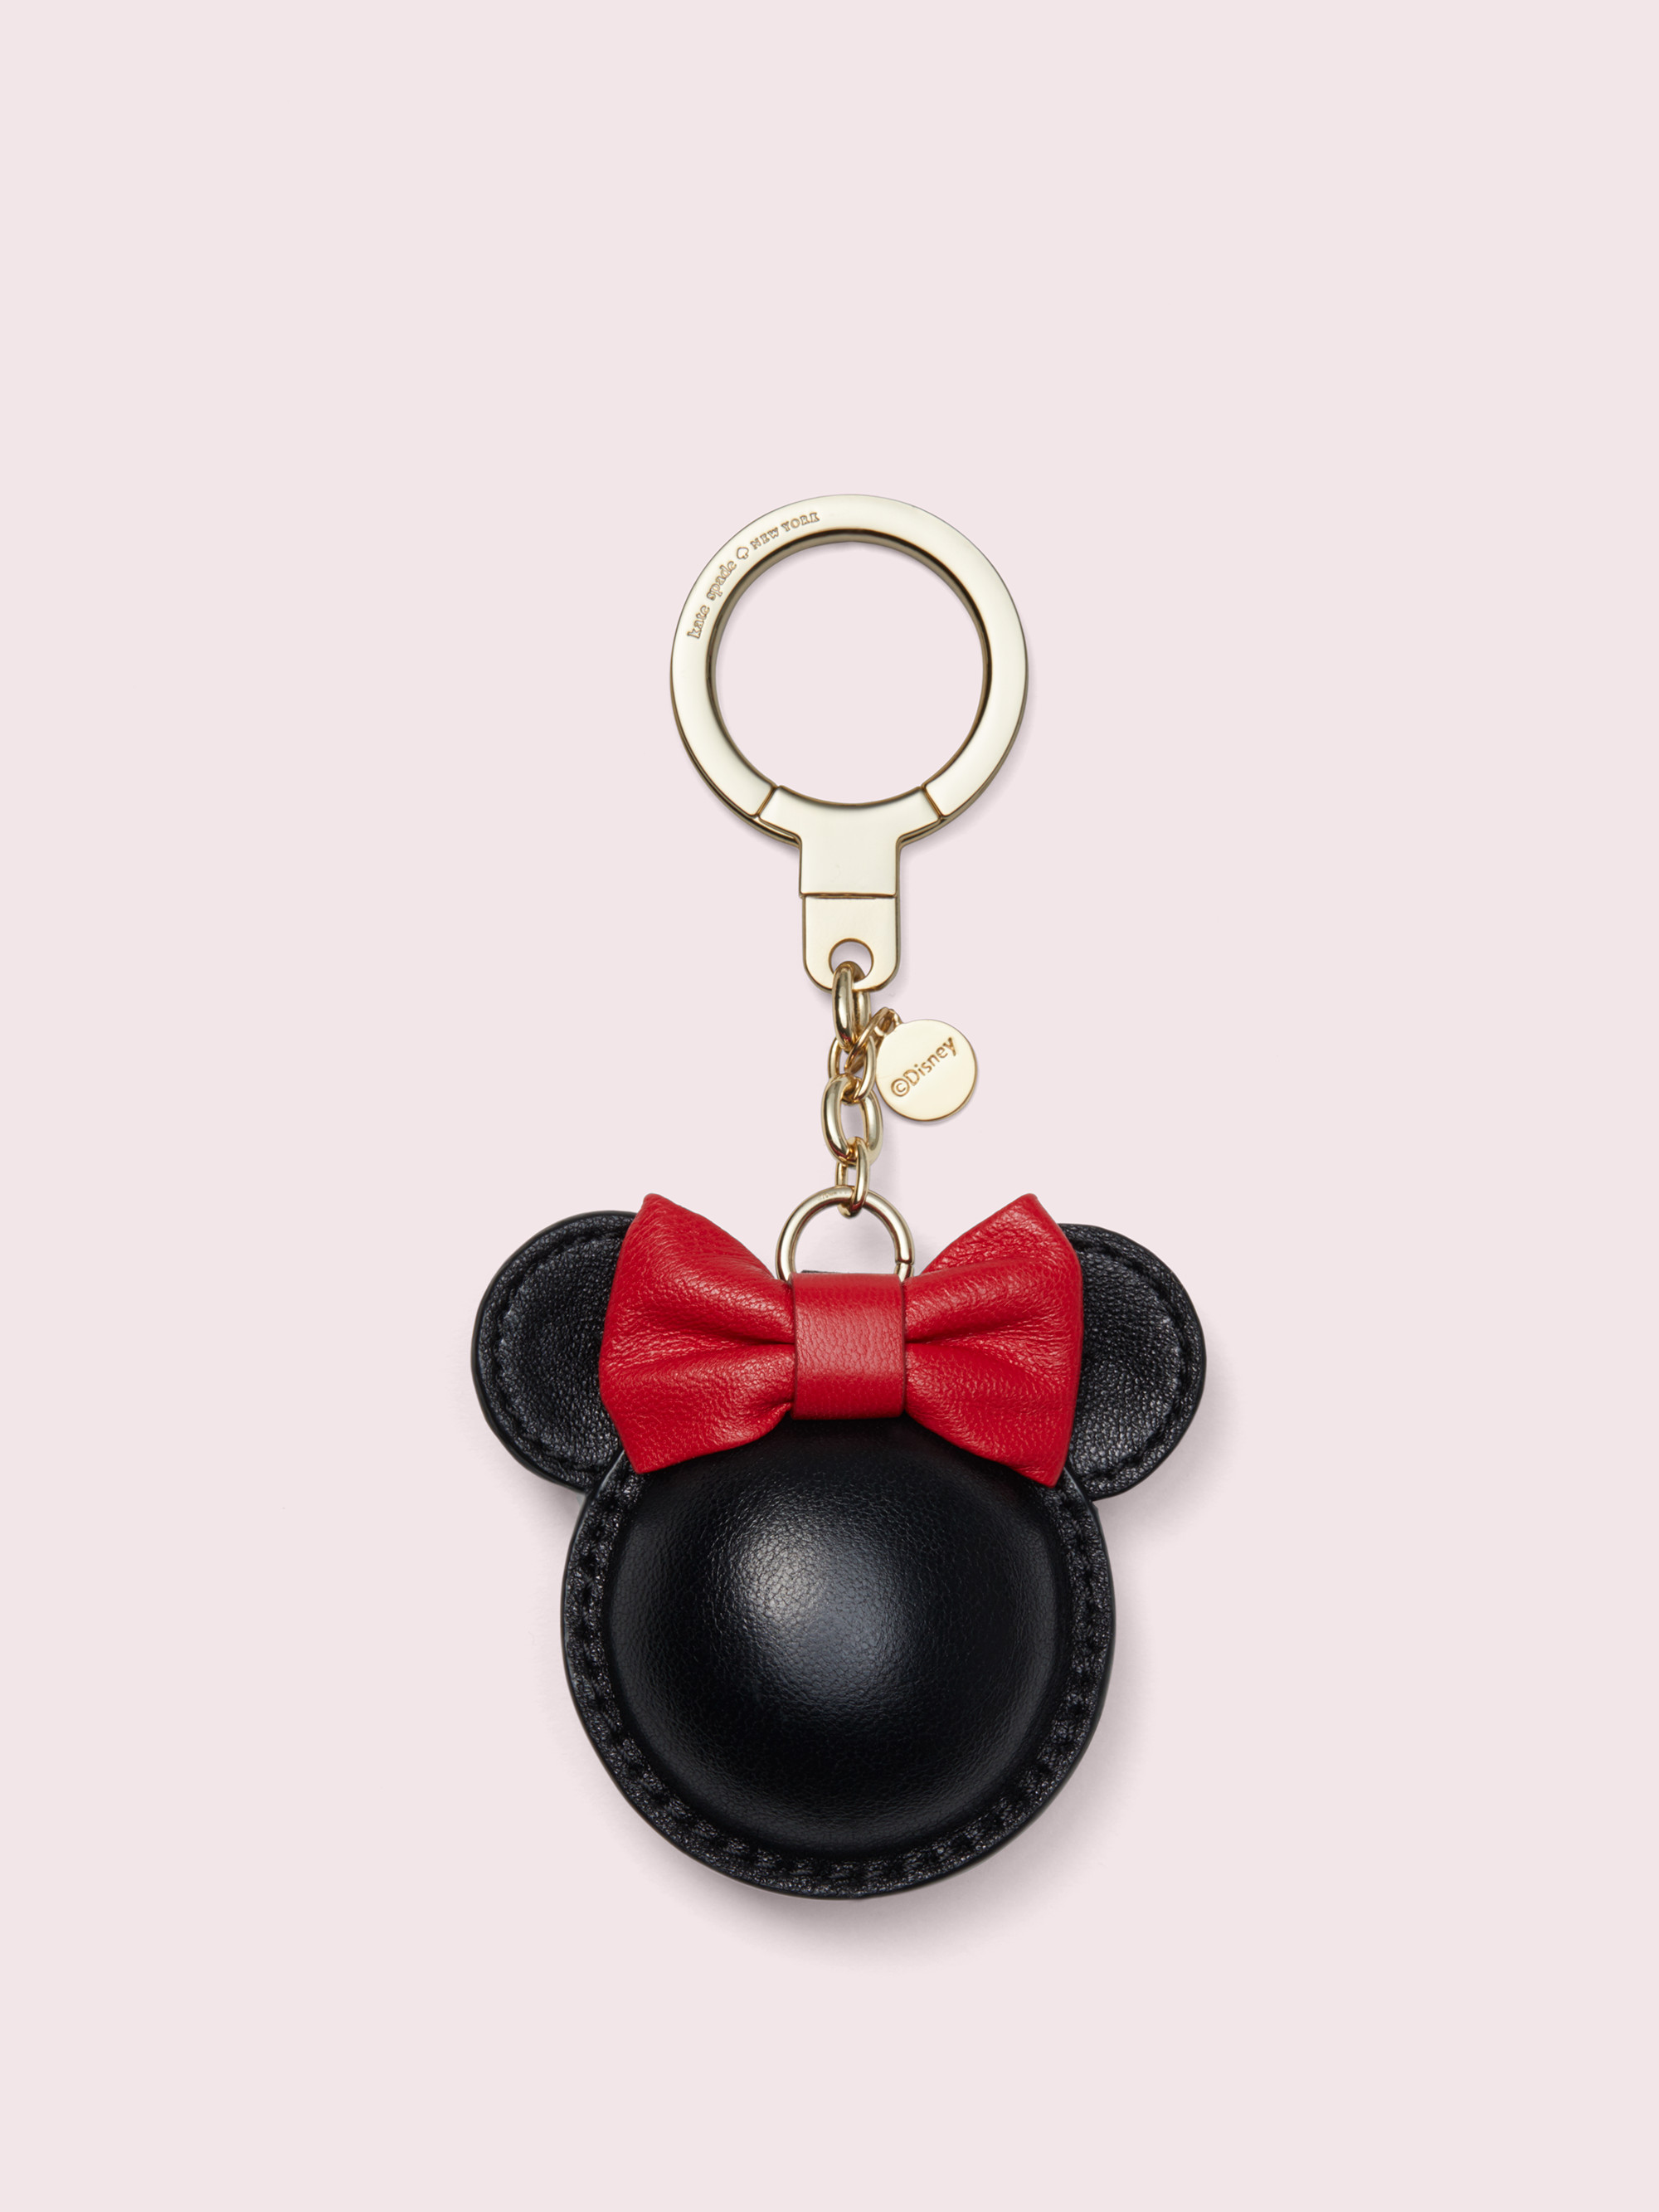 Kate Spade New York x Minnie Mouse + Minnie Keychain